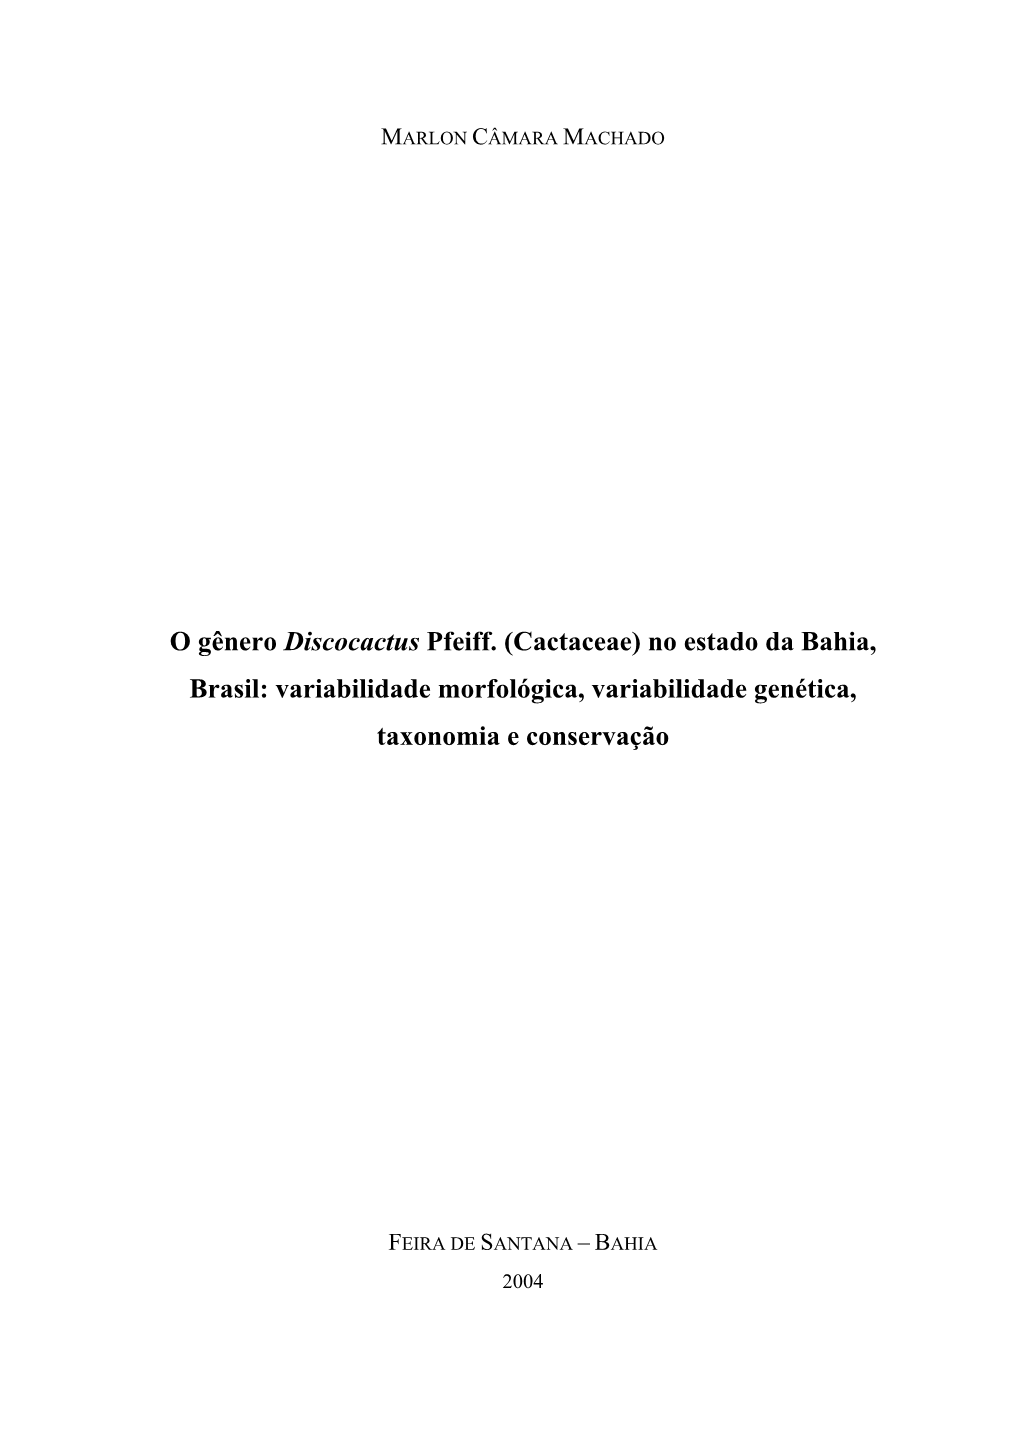 O Gênero Discocactus Pfeiff. (Cactaceae) No Estado Da Bahia, Brasil: Variabilidade Morfológica, Variabilidade Genética, Taxonomia E Conservação